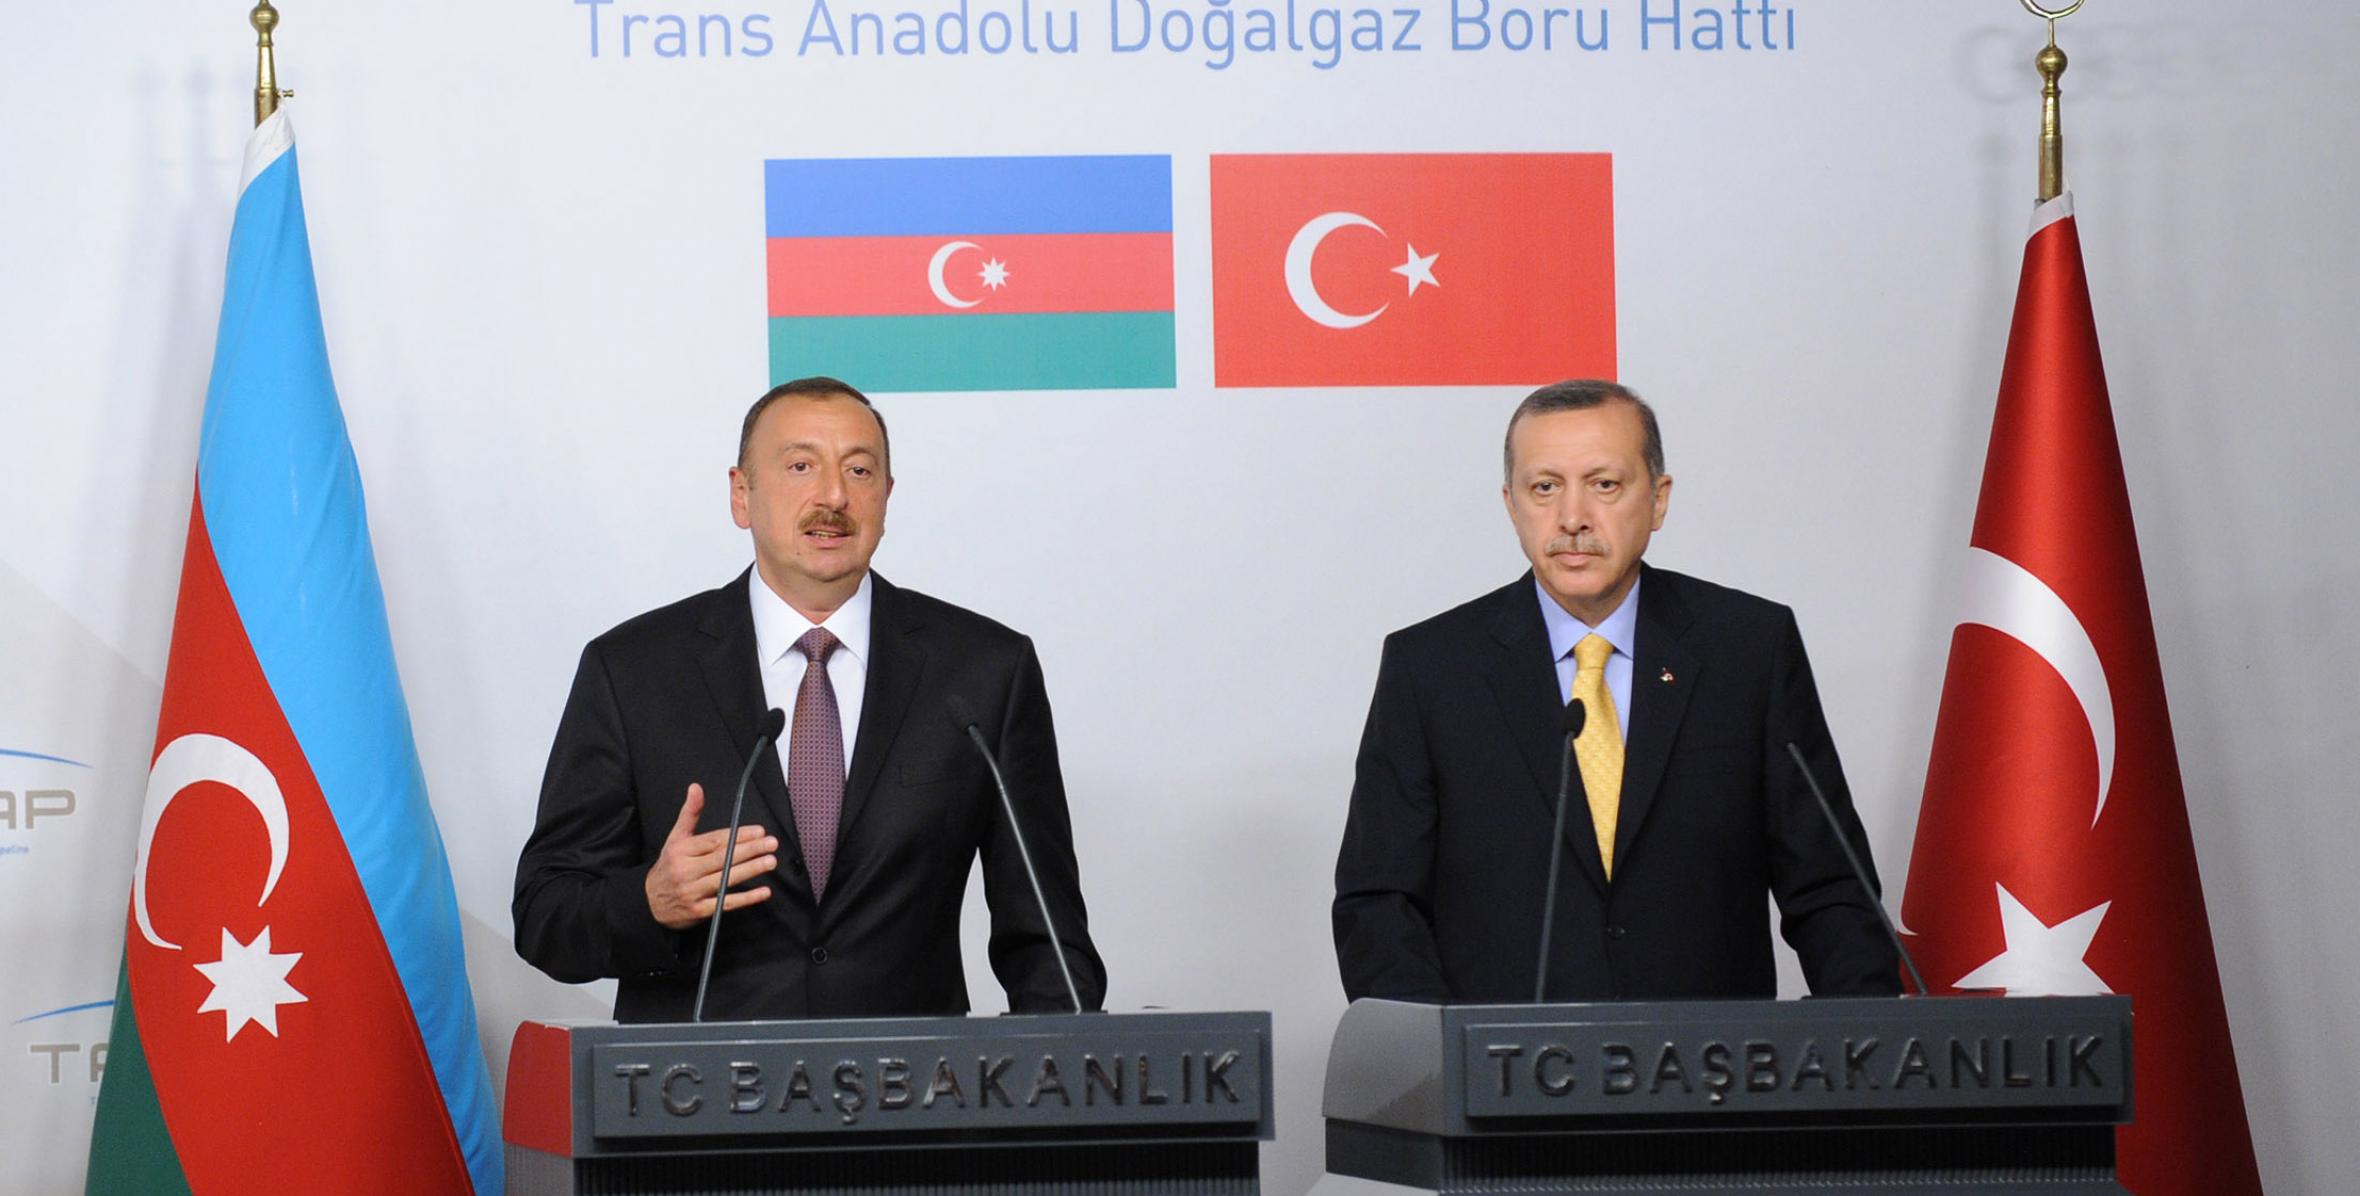 Ильхам Алиев и премьер-министр Реджеп Тайиб Эрдоган выступили с заявлениями для прессы